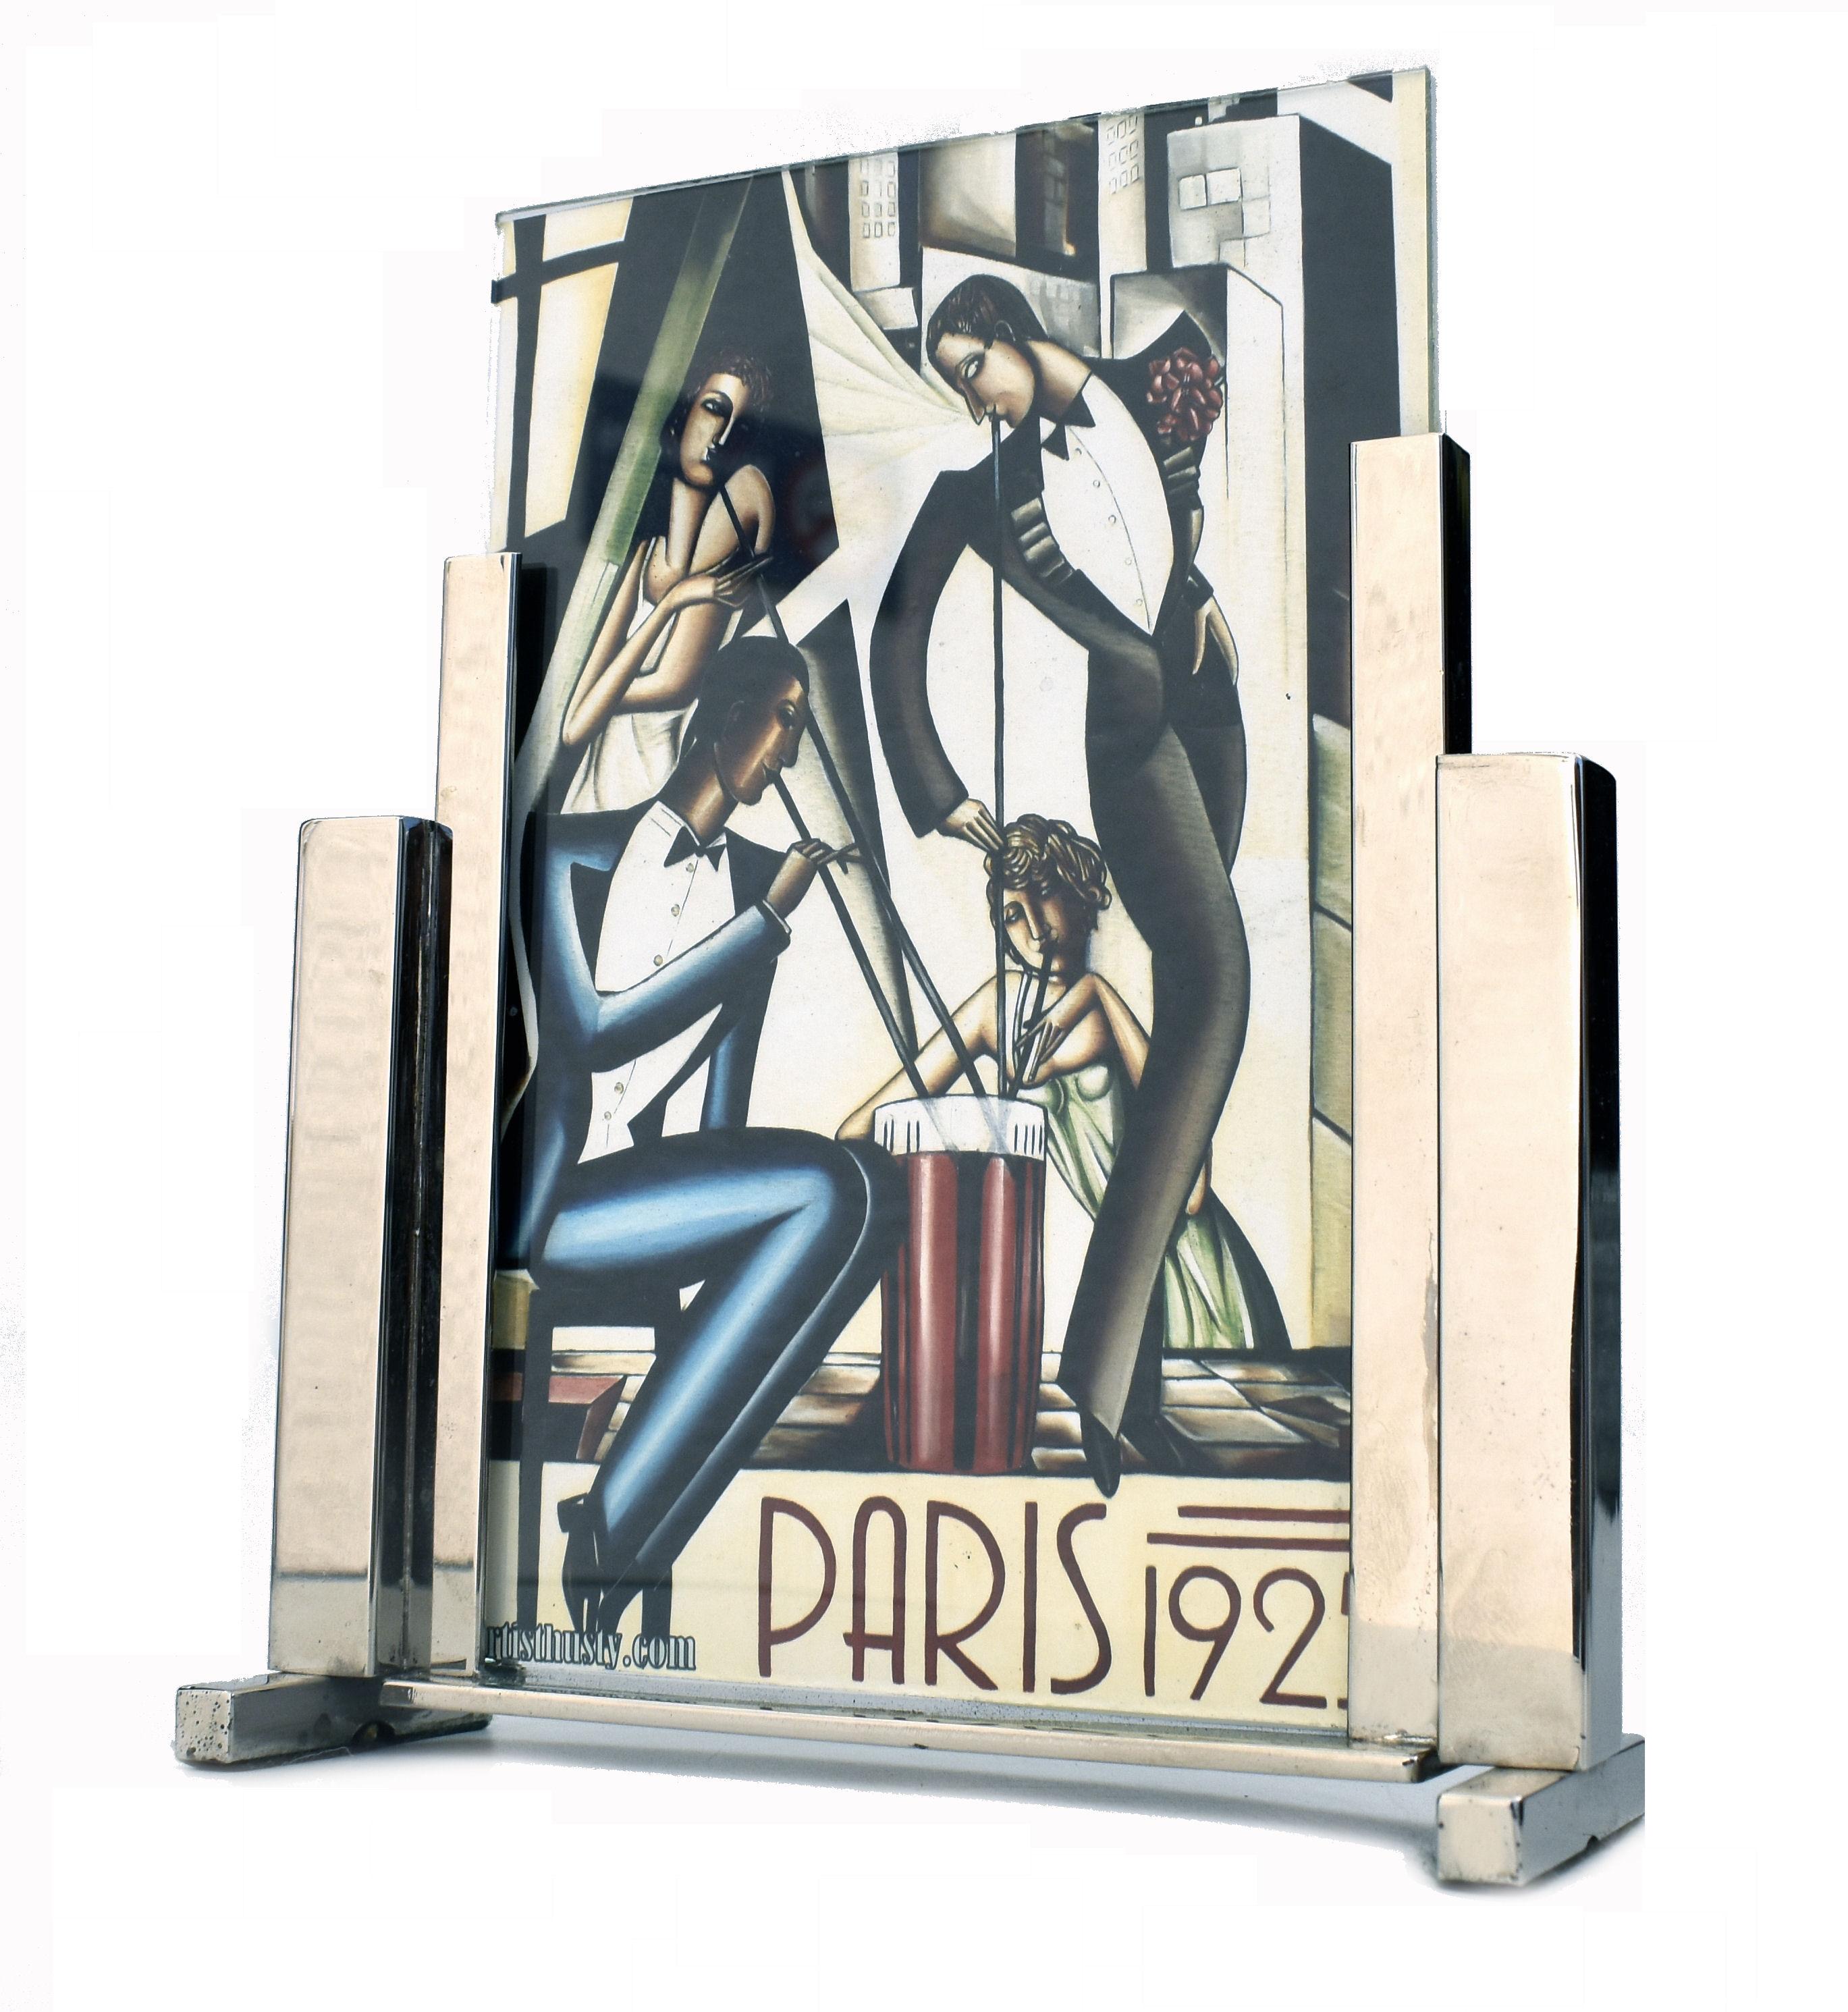 Super stylischer Art Deco Modernist Bilderrahmen aus Chrom und Glas aus den 1930er Jahren. Der Rahmen besteht aus zwei Glasscheiben, die in den verchromten Ständer eingesteckt werden, so dass ein Bild auf beiden Seiten des freistehenden Rahmens